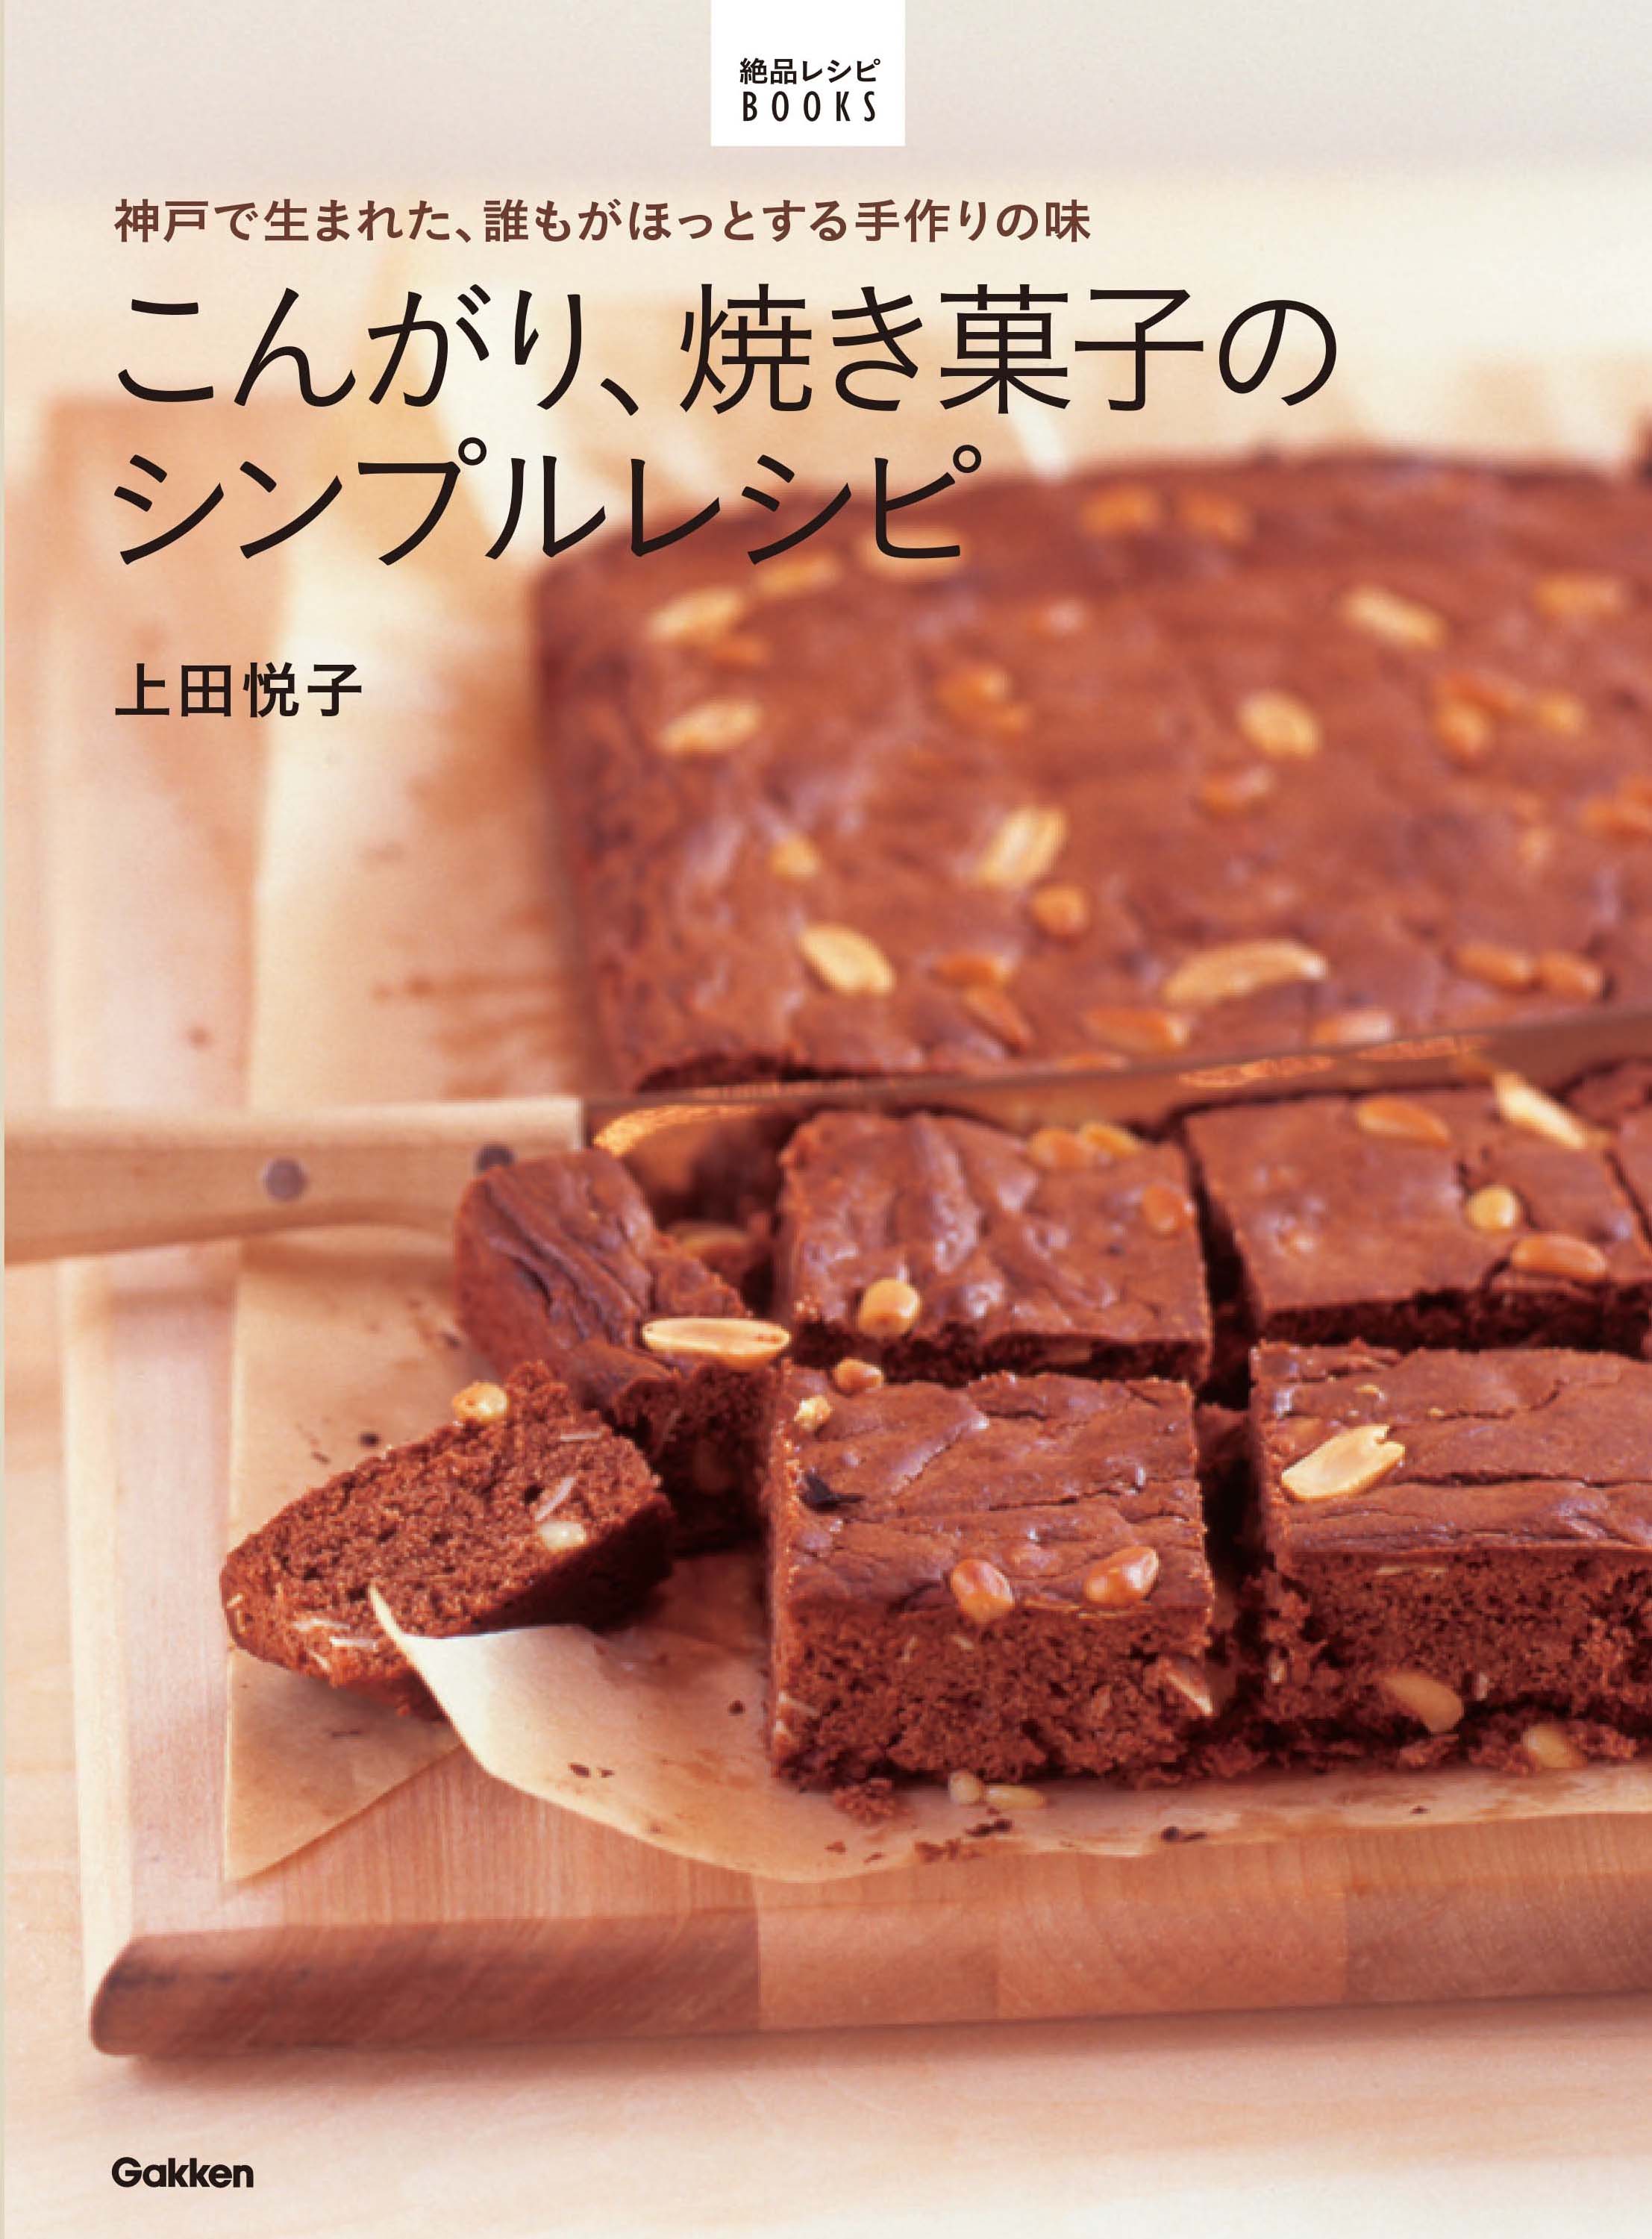 神戸で生まれた 誰もがほっとする手作りの味 こんがり 焼き菓子のシンプルレシピ が11月17日 火 発売 株式会社学研プラスのプレスリリース